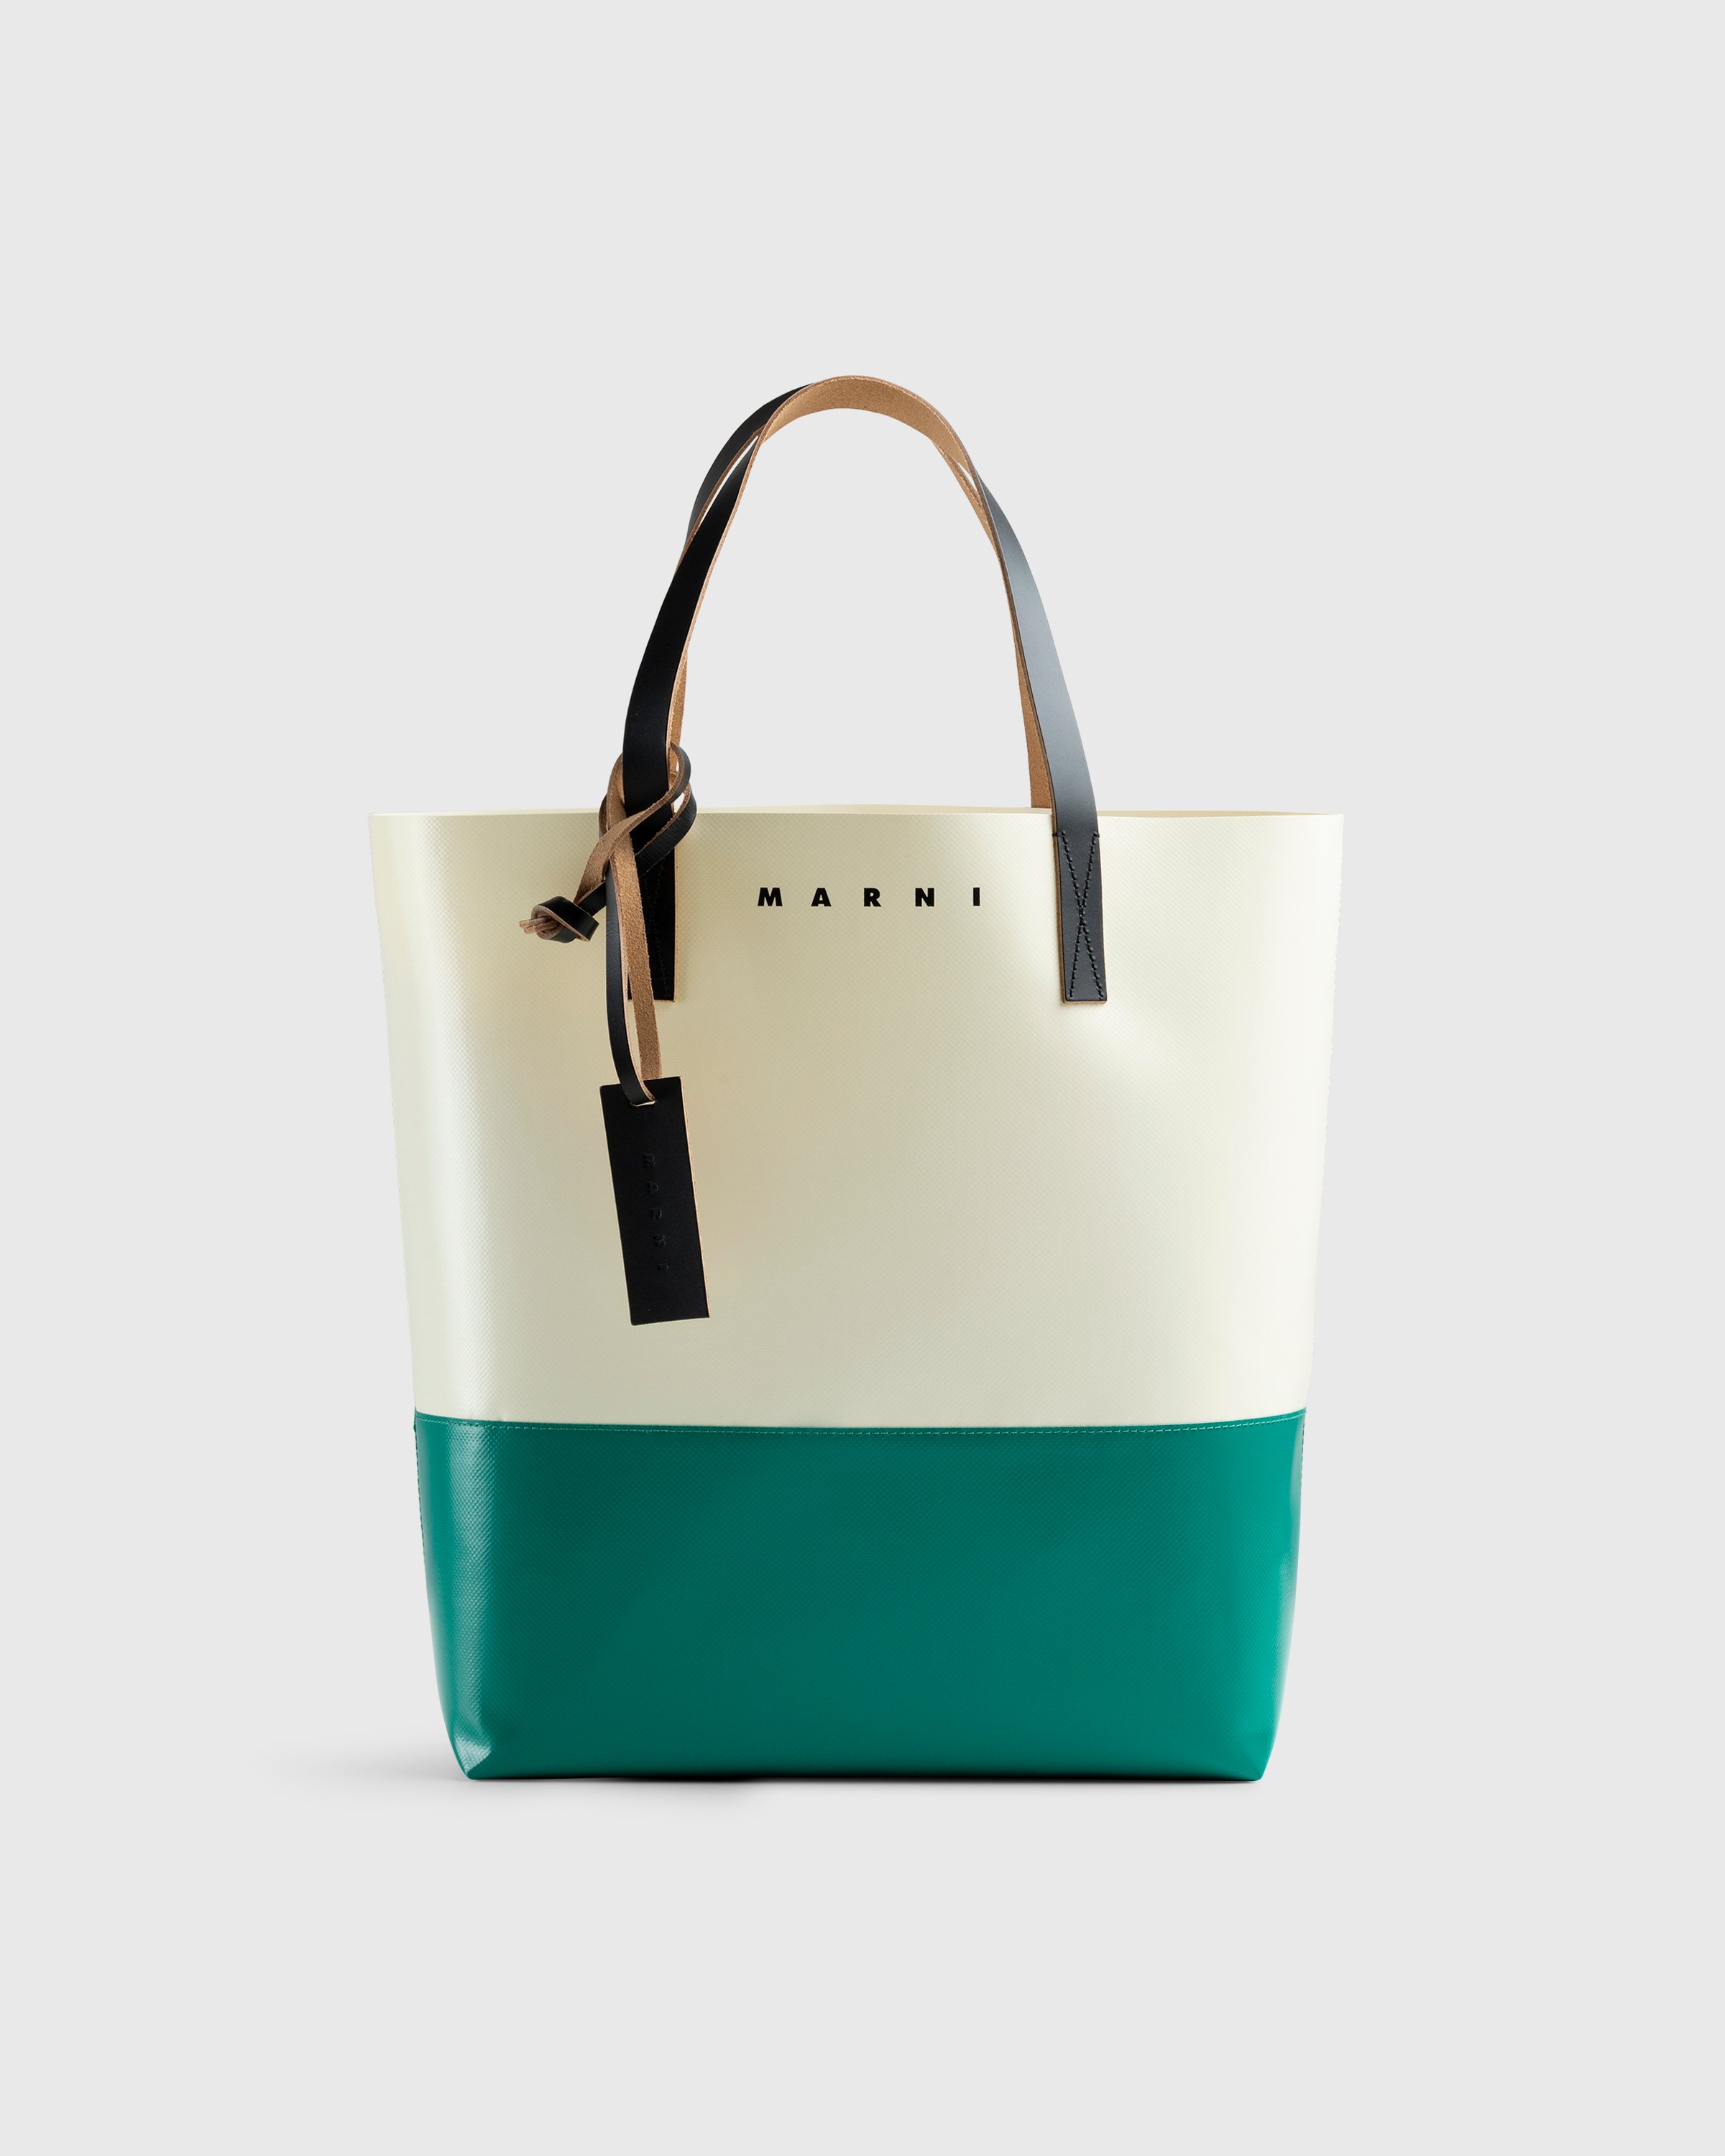 Marni - Tribeca Two-Tone Tote Bag White/Green - Accessories - Multi - Image 1